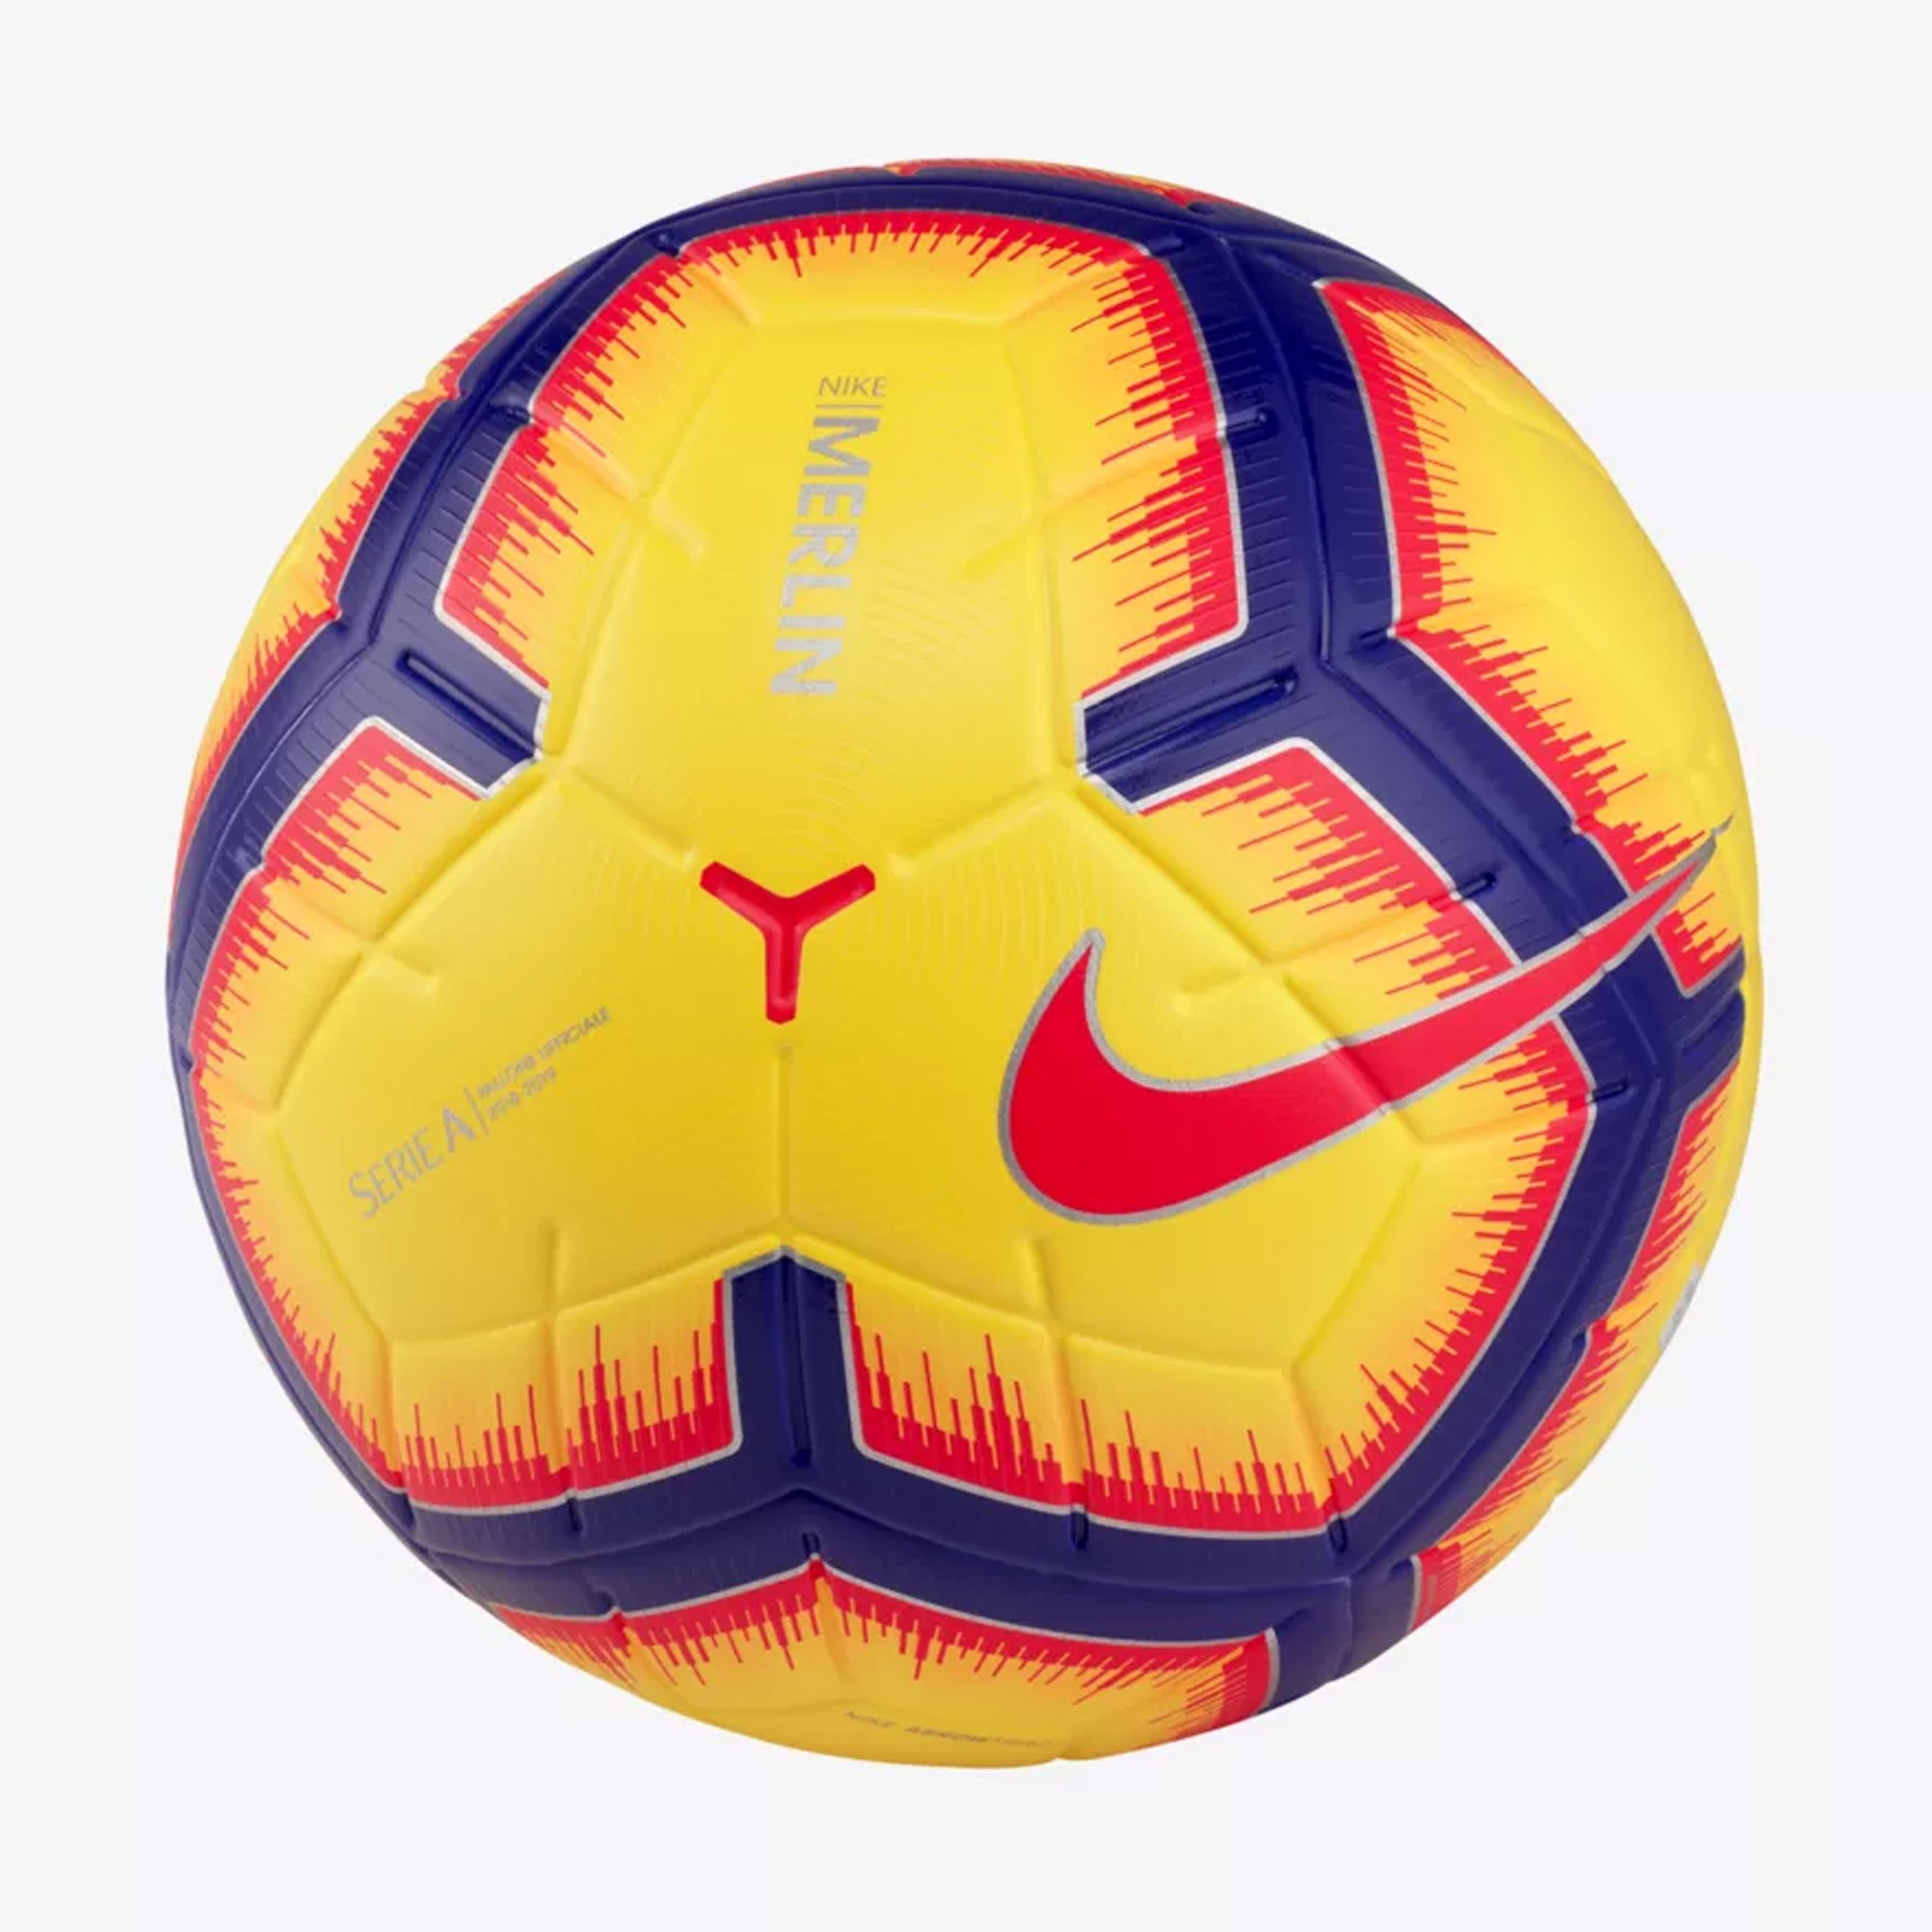 Pallone Nike Serie A 2019 Merlin Ufficiale Originale SC3373-710 Giallo Size  5 | eBay